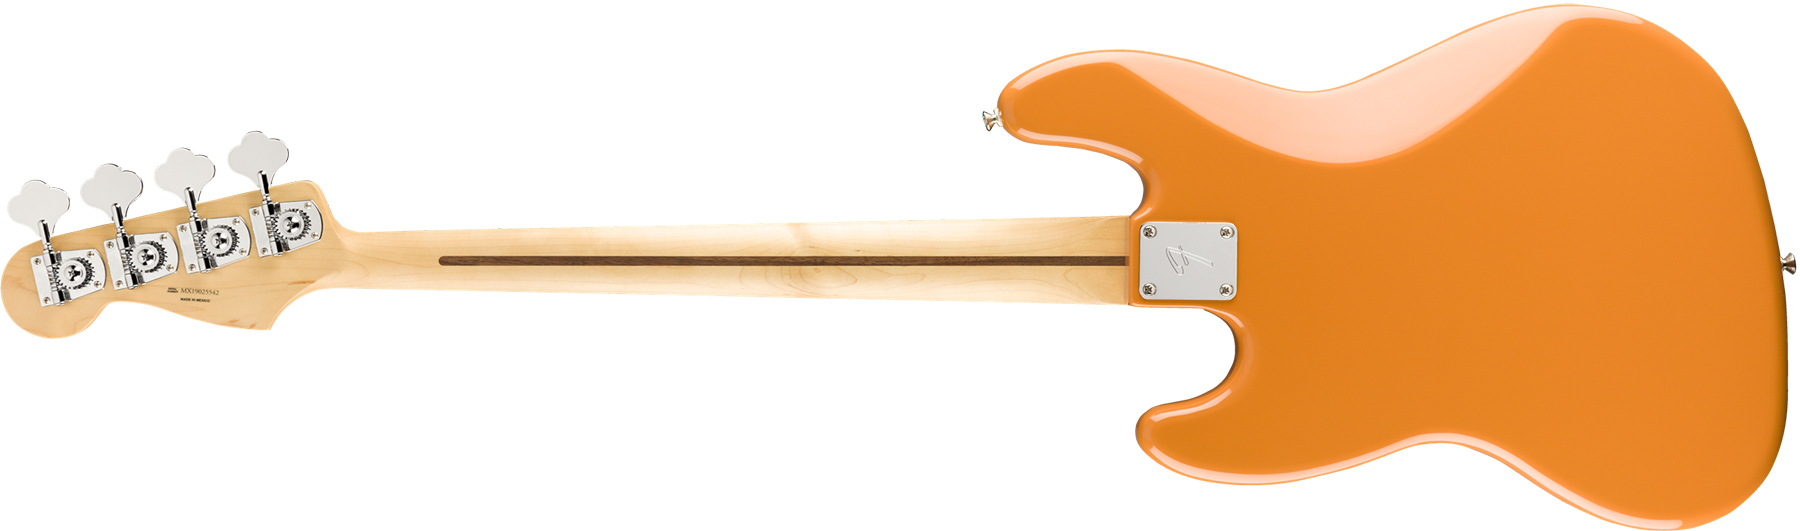 Fender Jazz Bass Player Mex Pf - Capri Orange - Bajo eléctrico de cuerpo sólido - Variation 1